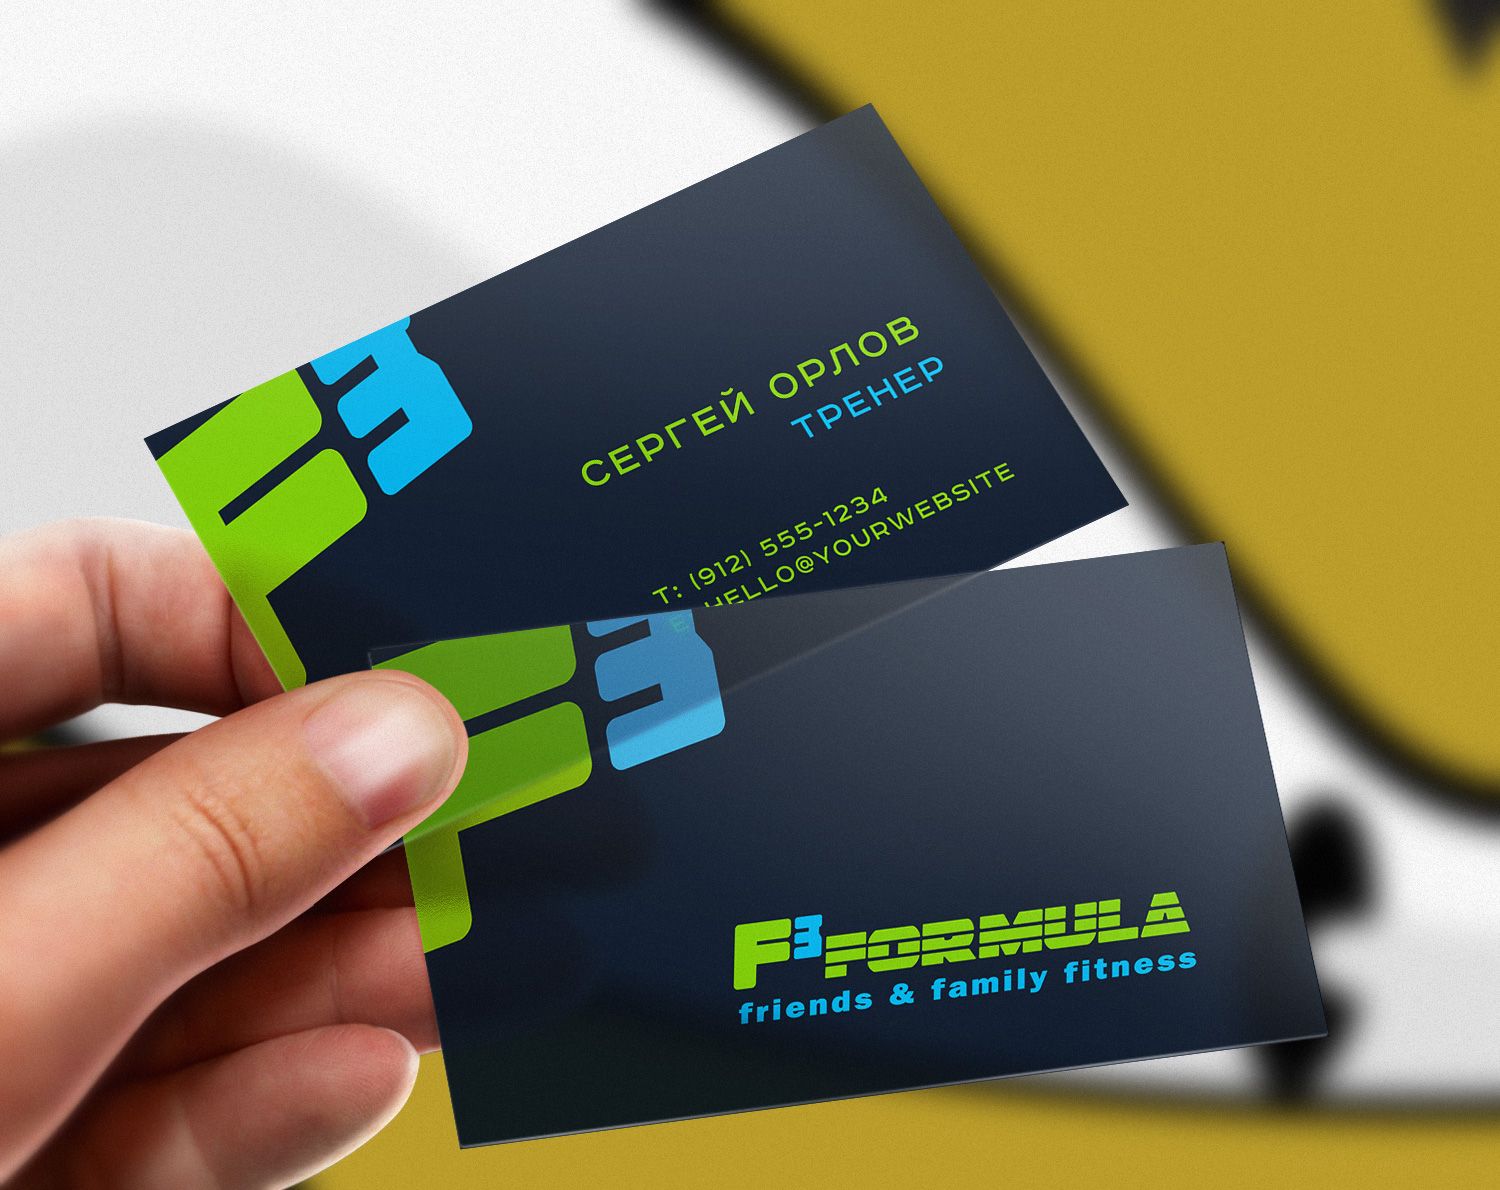 Лого и фирменный стиль для F3 formula - дизайнер Advokat72